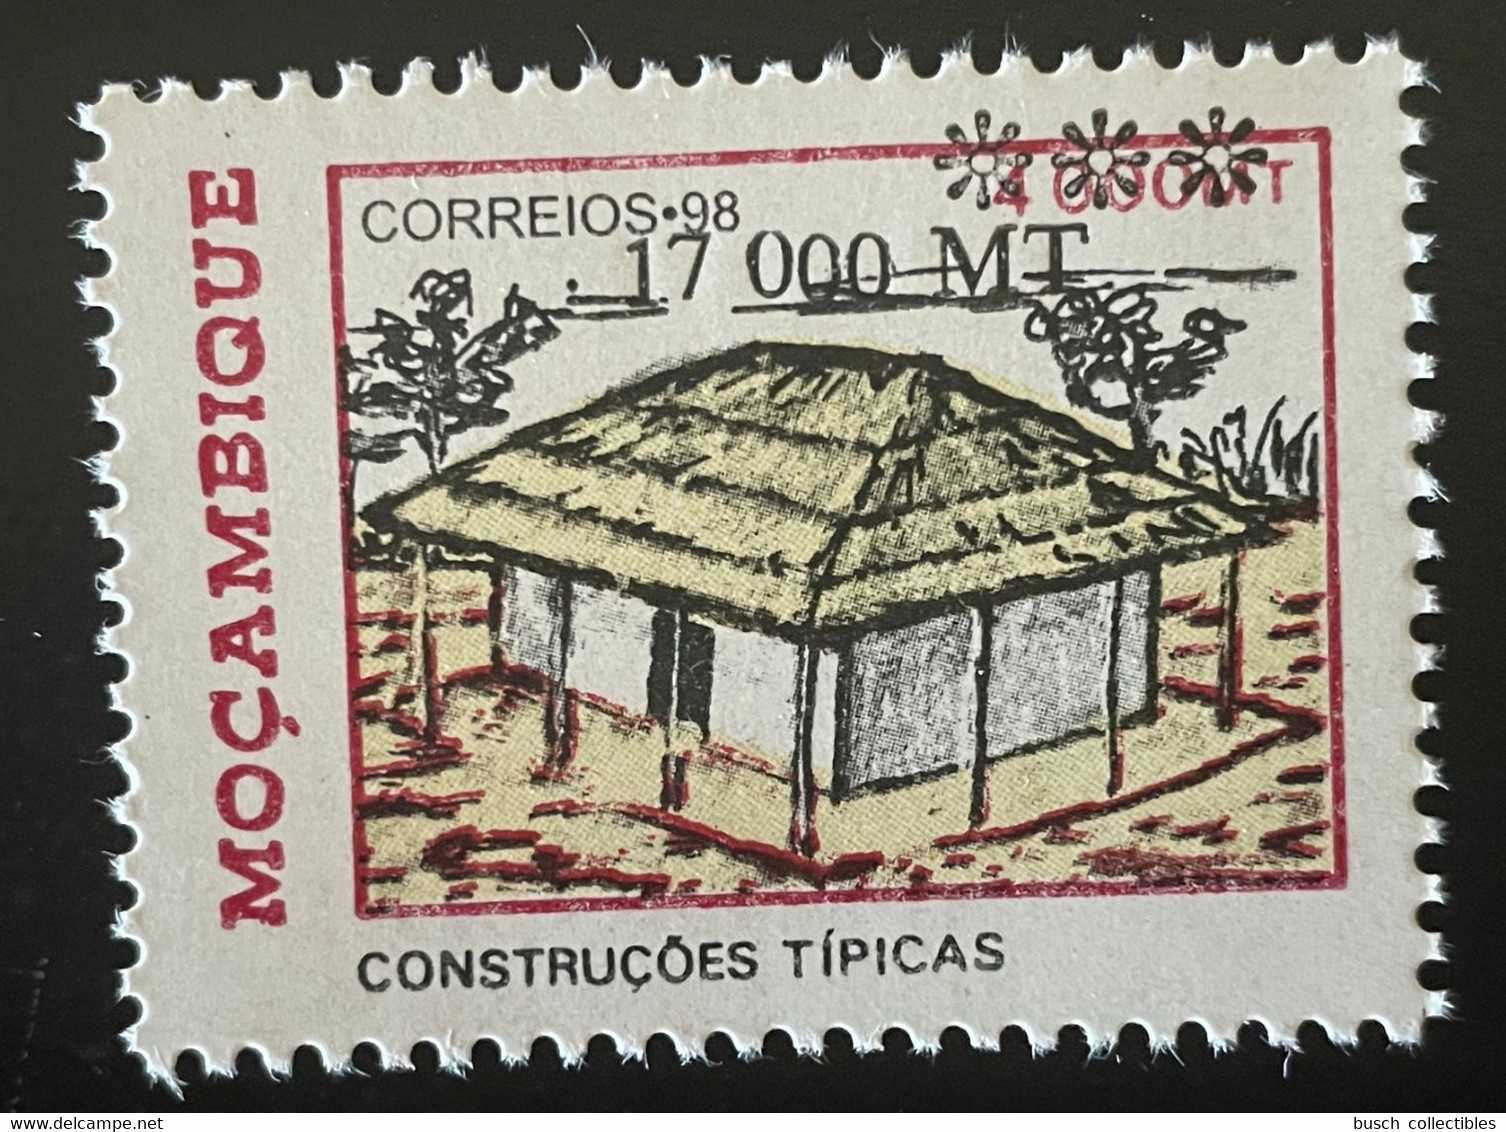 Moçambique Mozambique 1998 / 2000 Mi. B1567  - Construçoes Tipicas Wohnbauten Habitat Housing Overprint Surchargé RARE - Mozambique